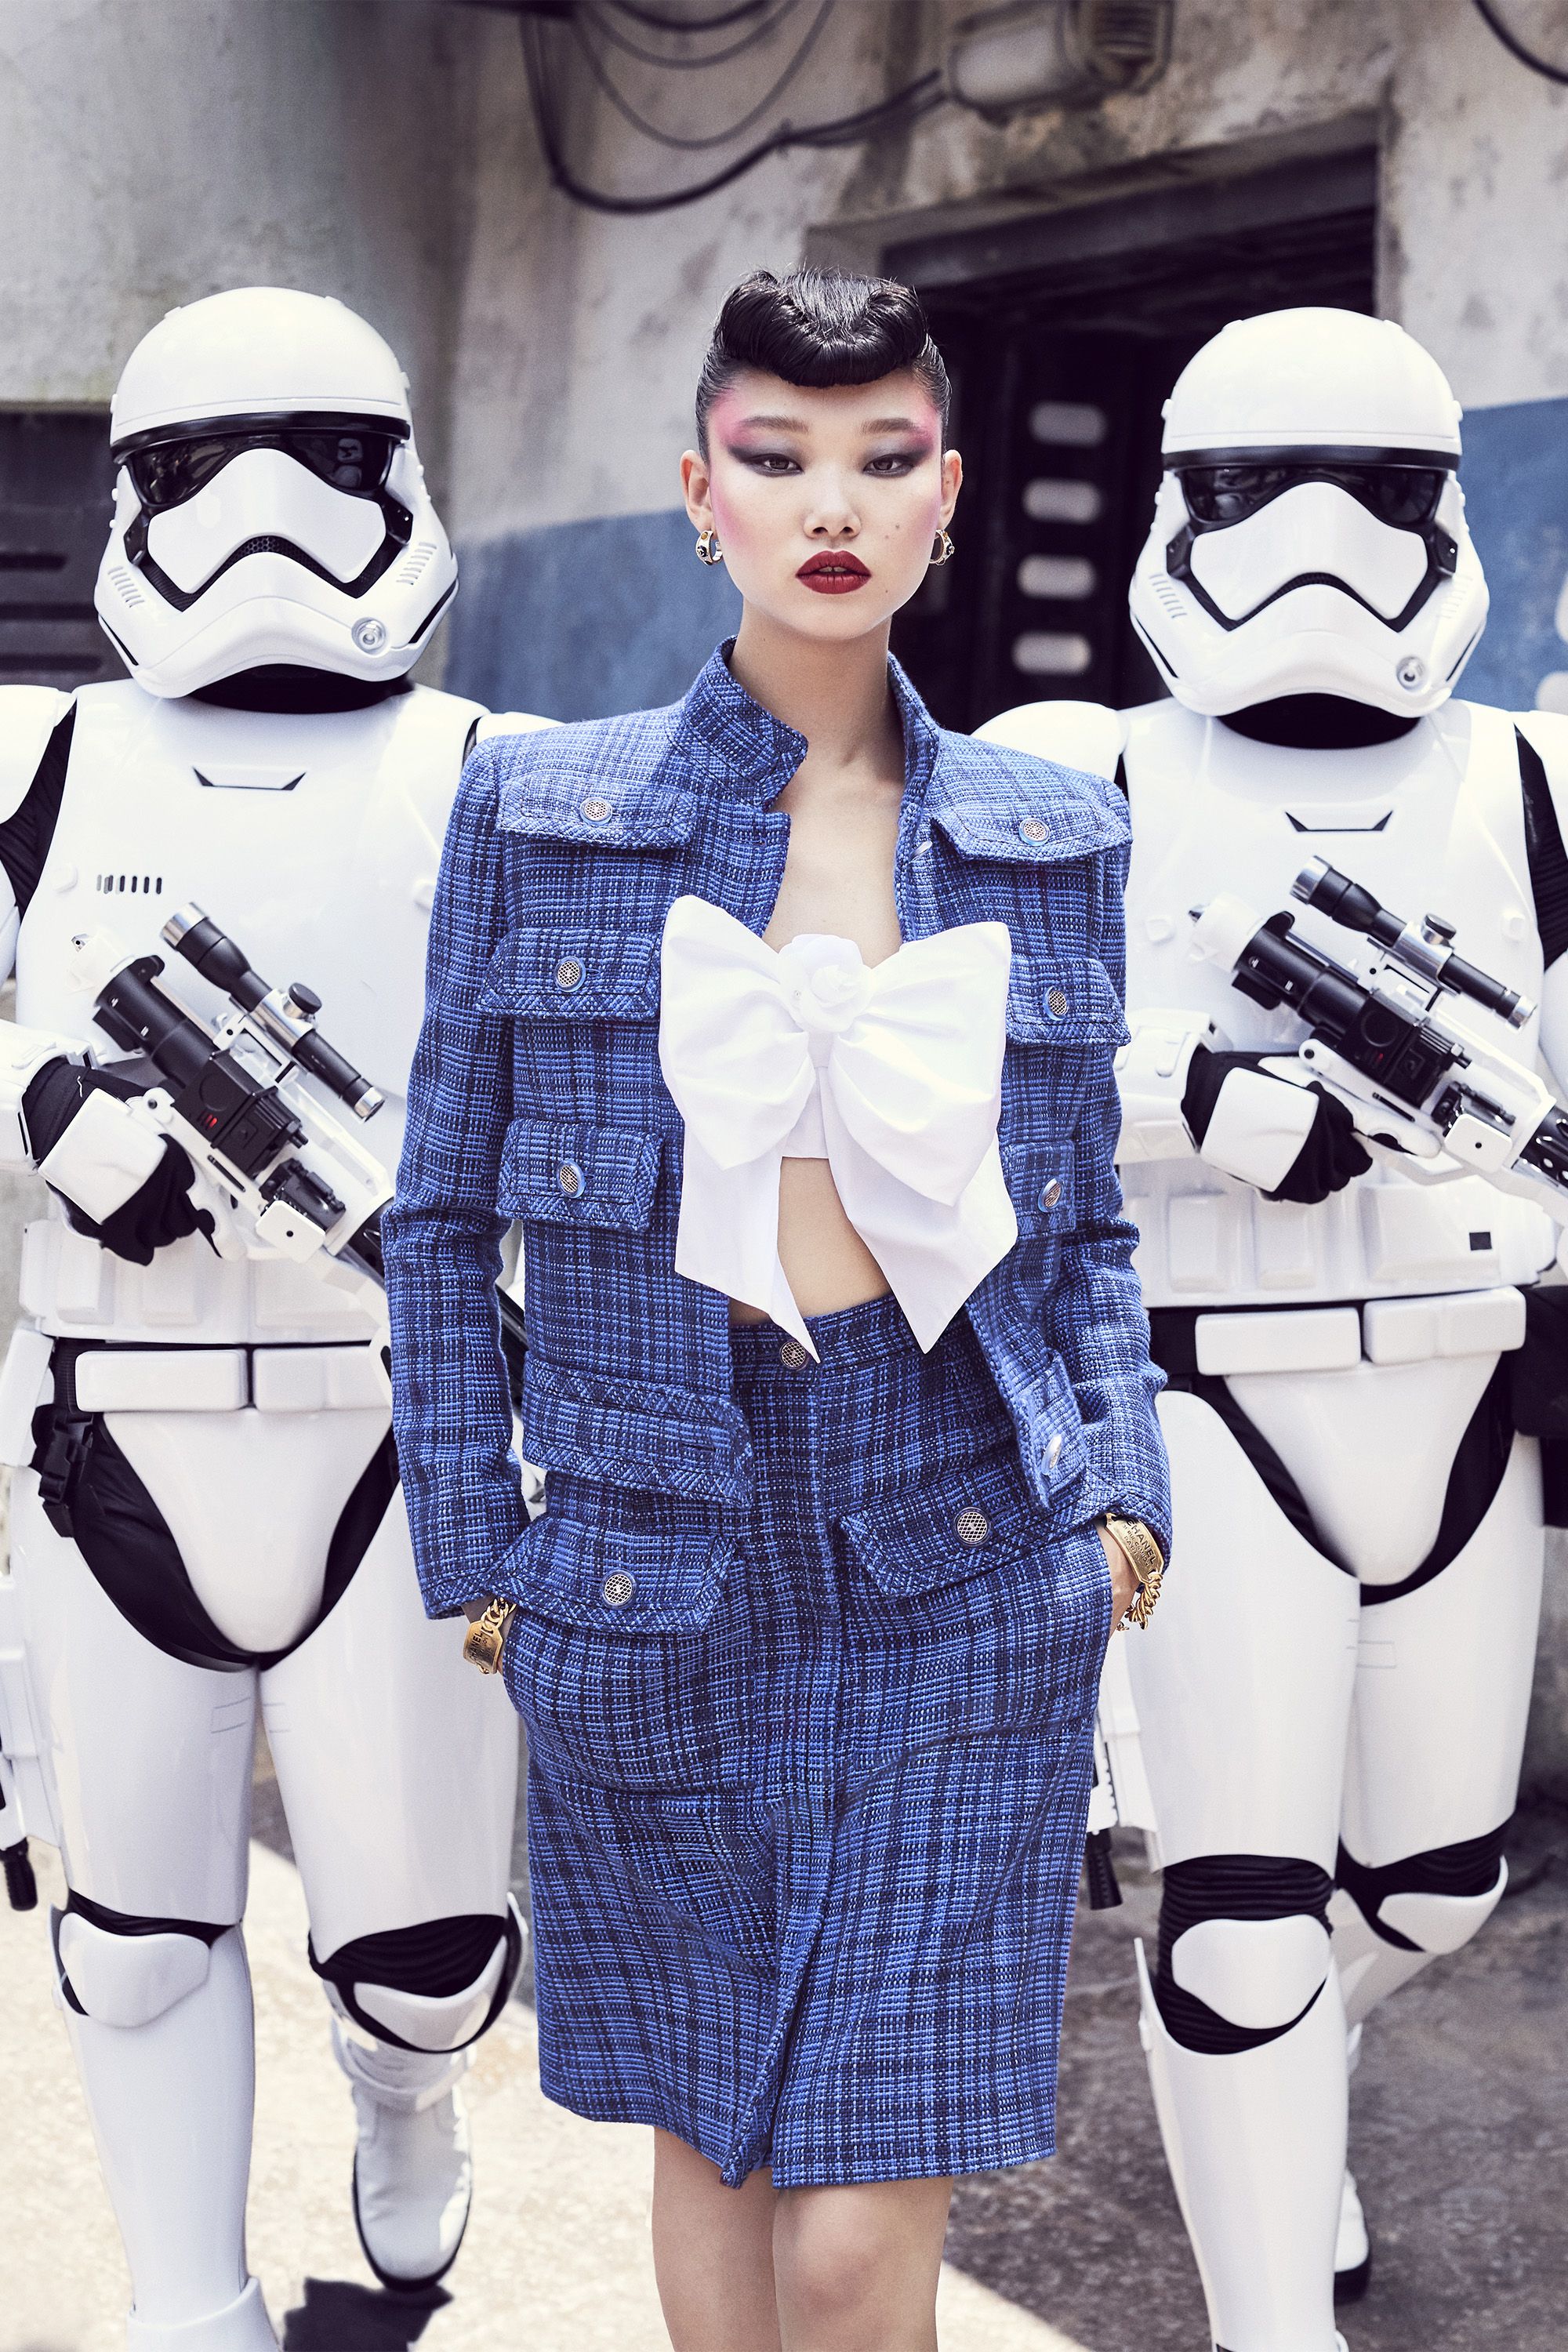 desastre espalda Desplazamiento Disney World's New Star Wars Attraction Gets the High Fashion Treatment